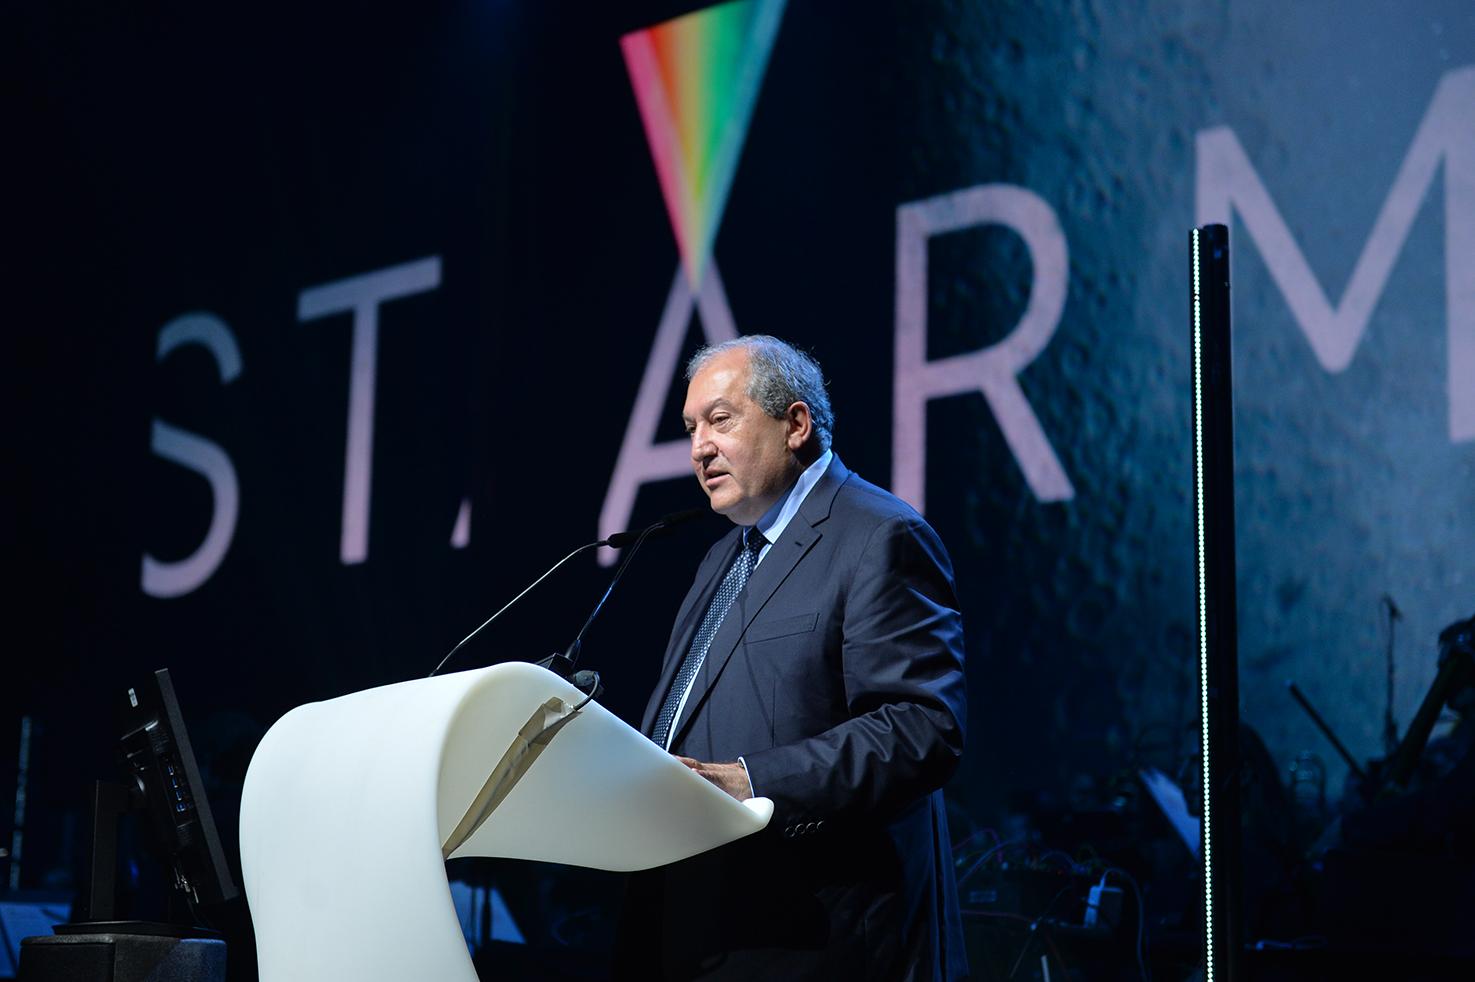 ՀՀ նախագահ Արմեն Սարգսյանն առաջարկել է Հայաստանում անցկացնել գիտության ու արվեստի միջազգային STARMUS 6-րդ փառատոնը